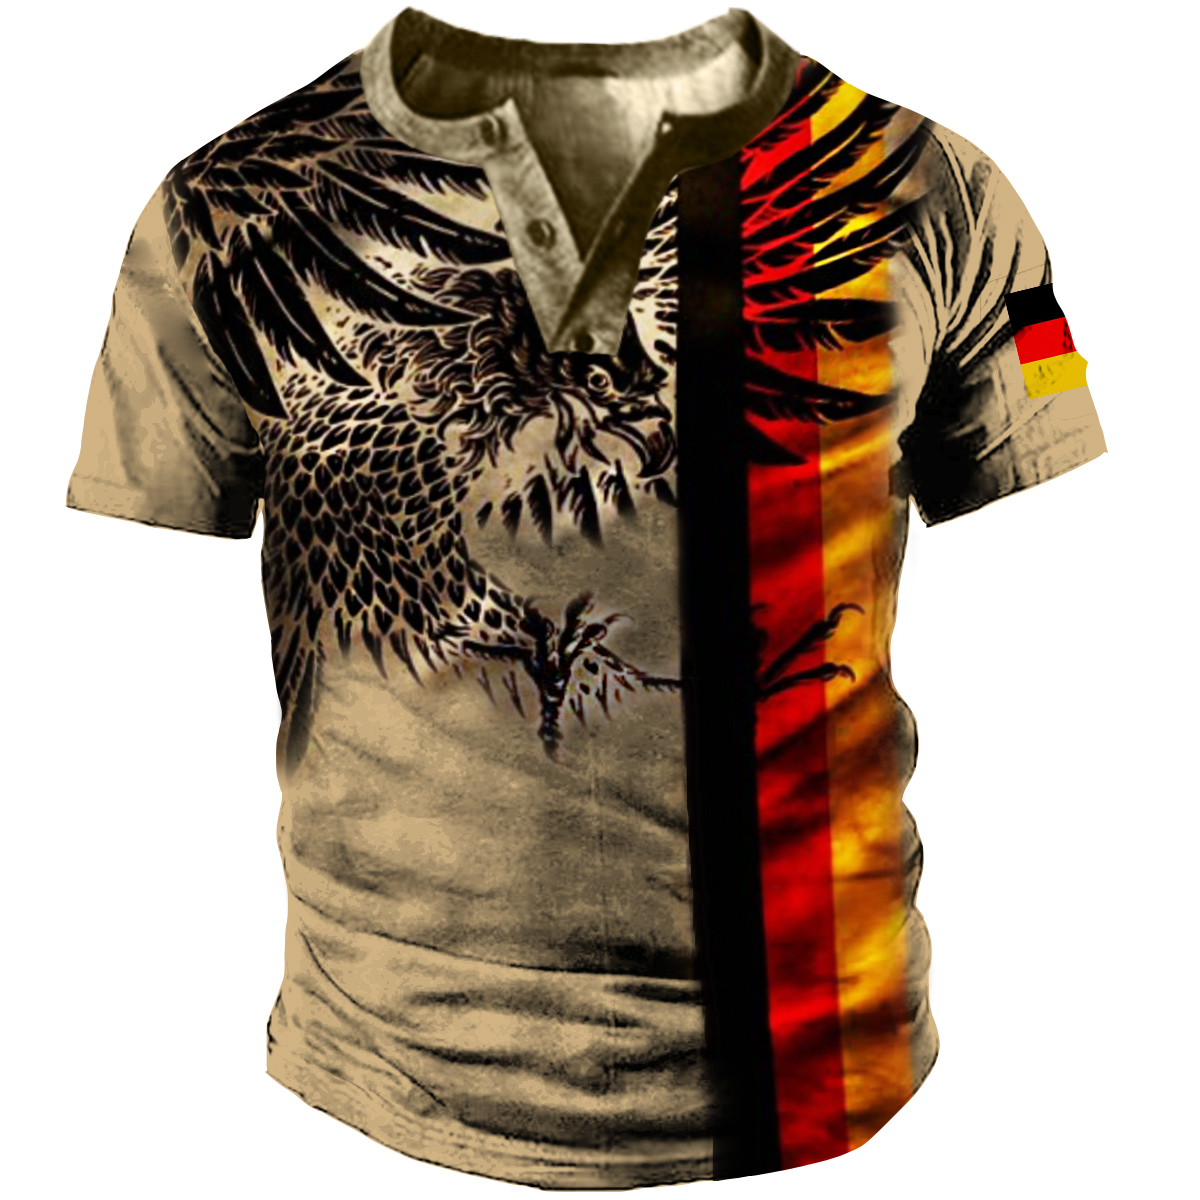 Men's Vintage German Eagle Chic Short Sleeve T-shirt